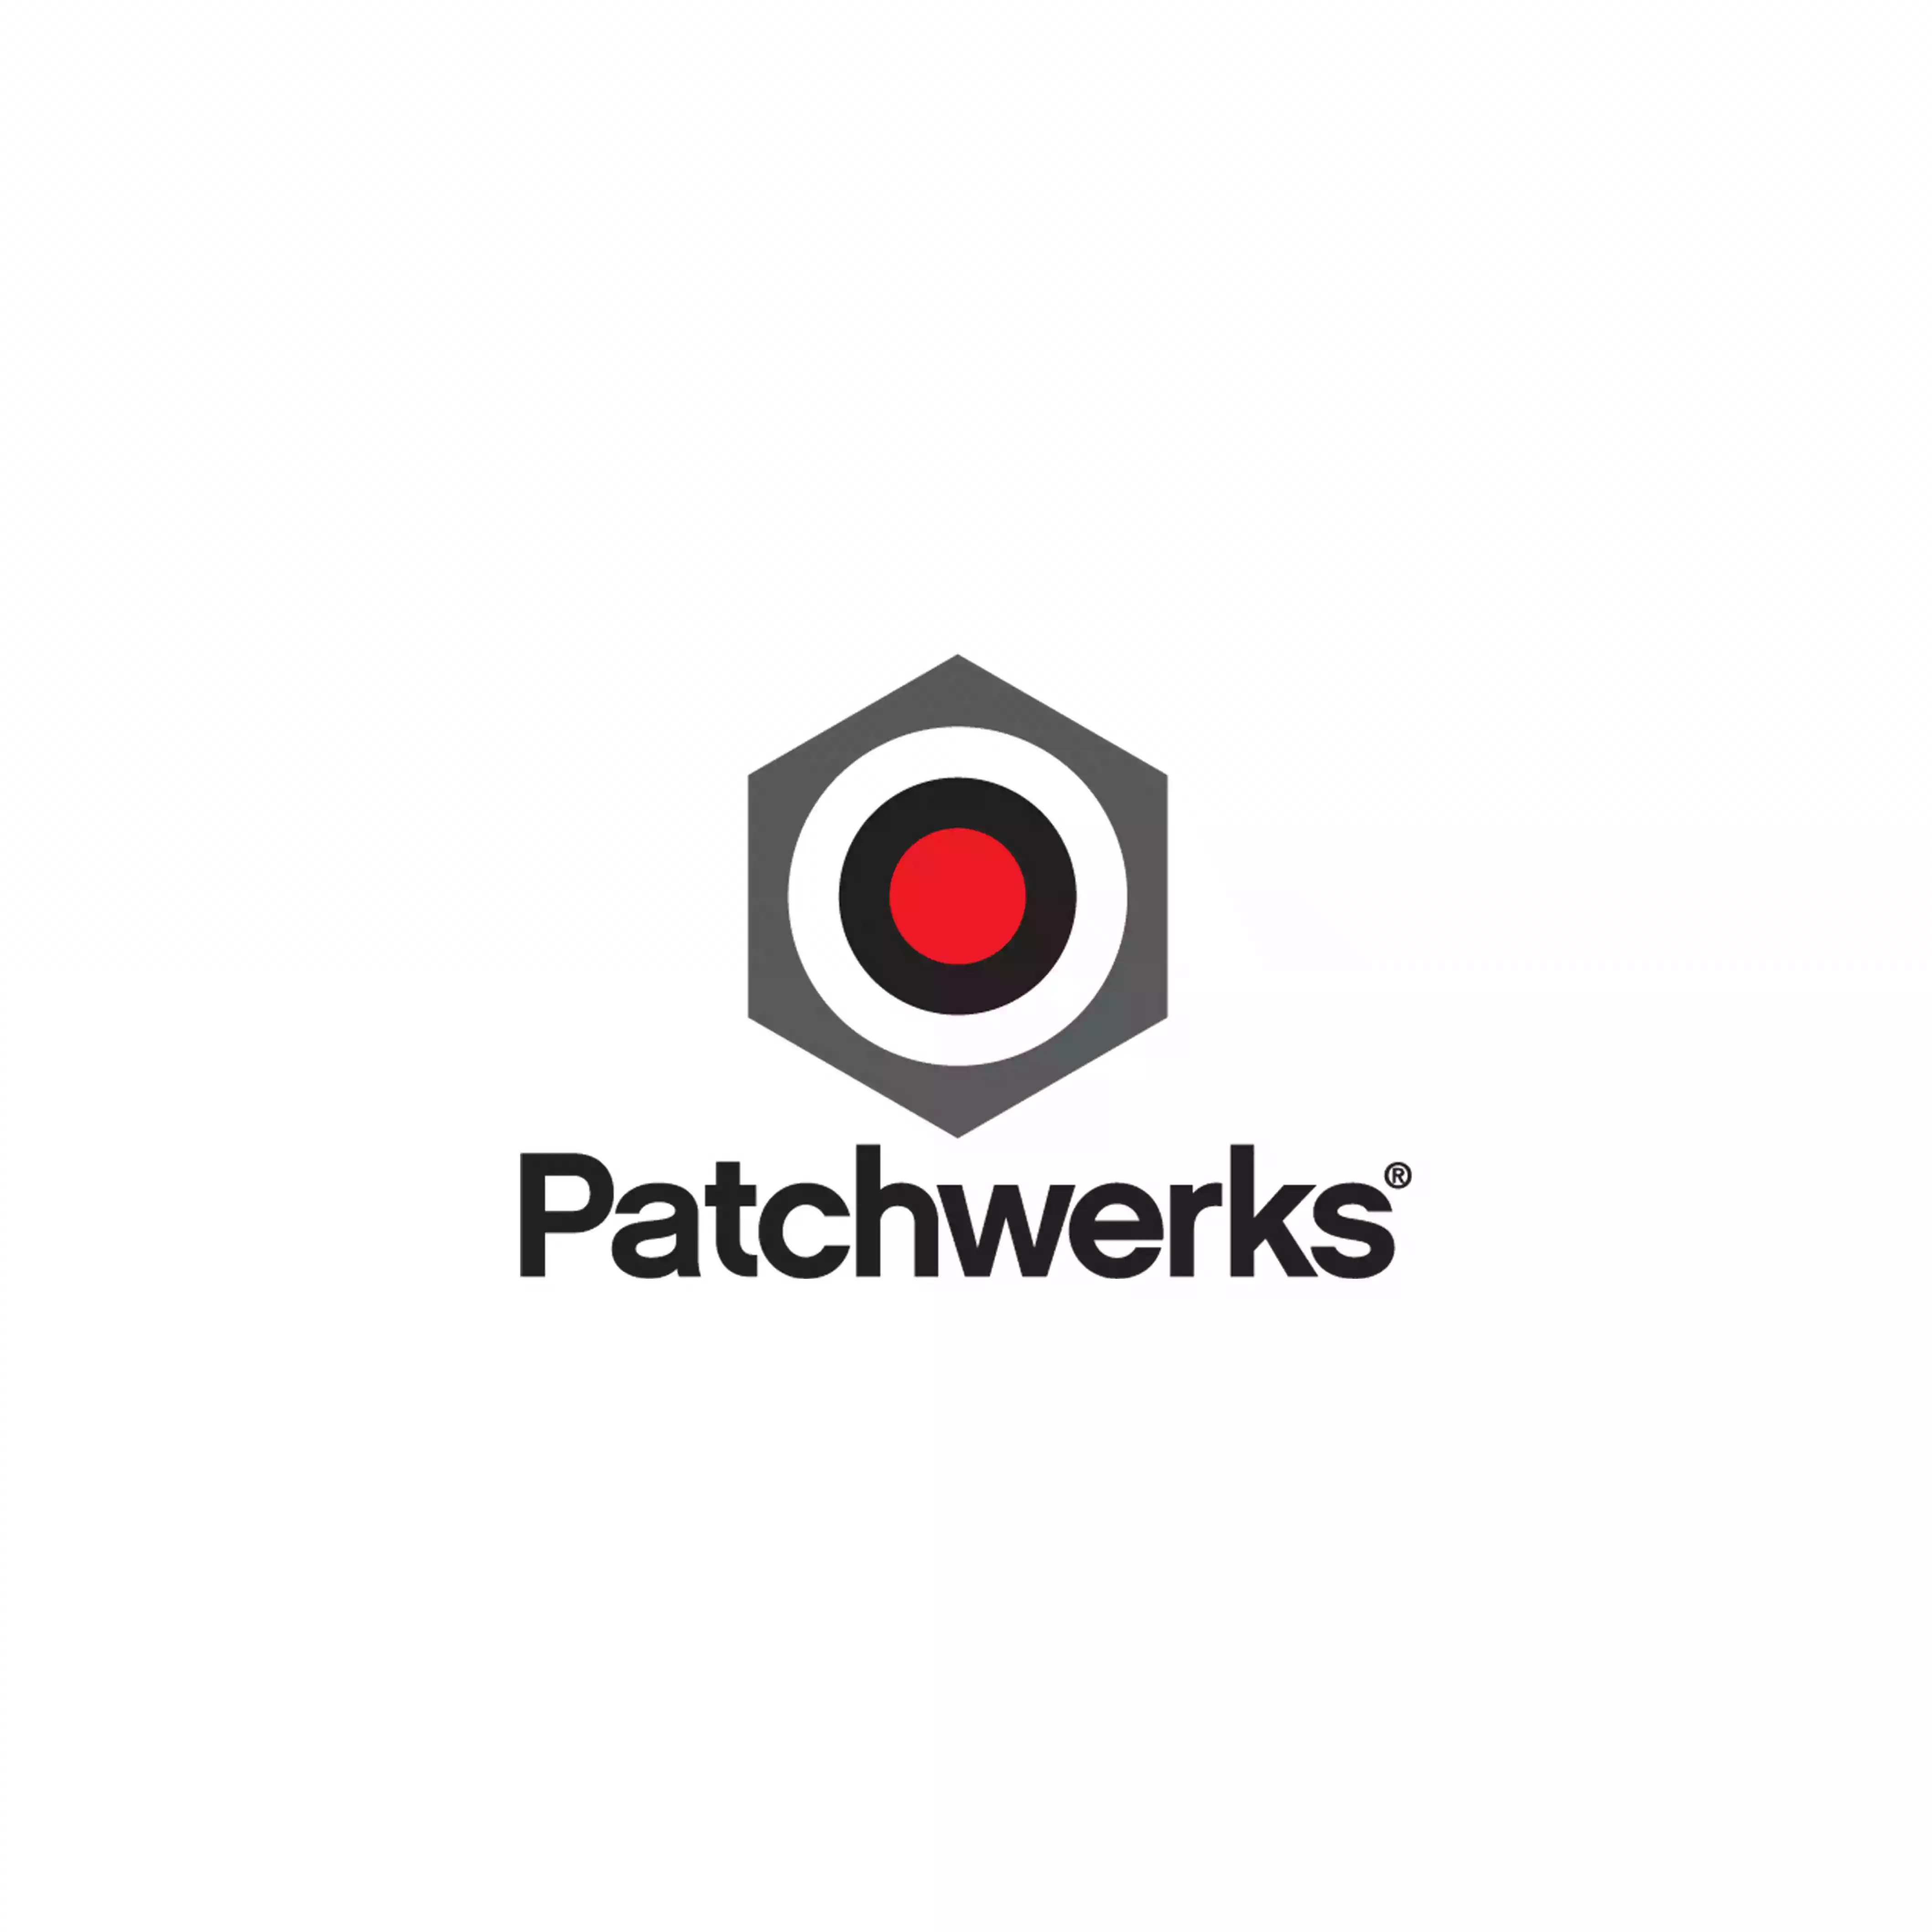 Patchwerks logo